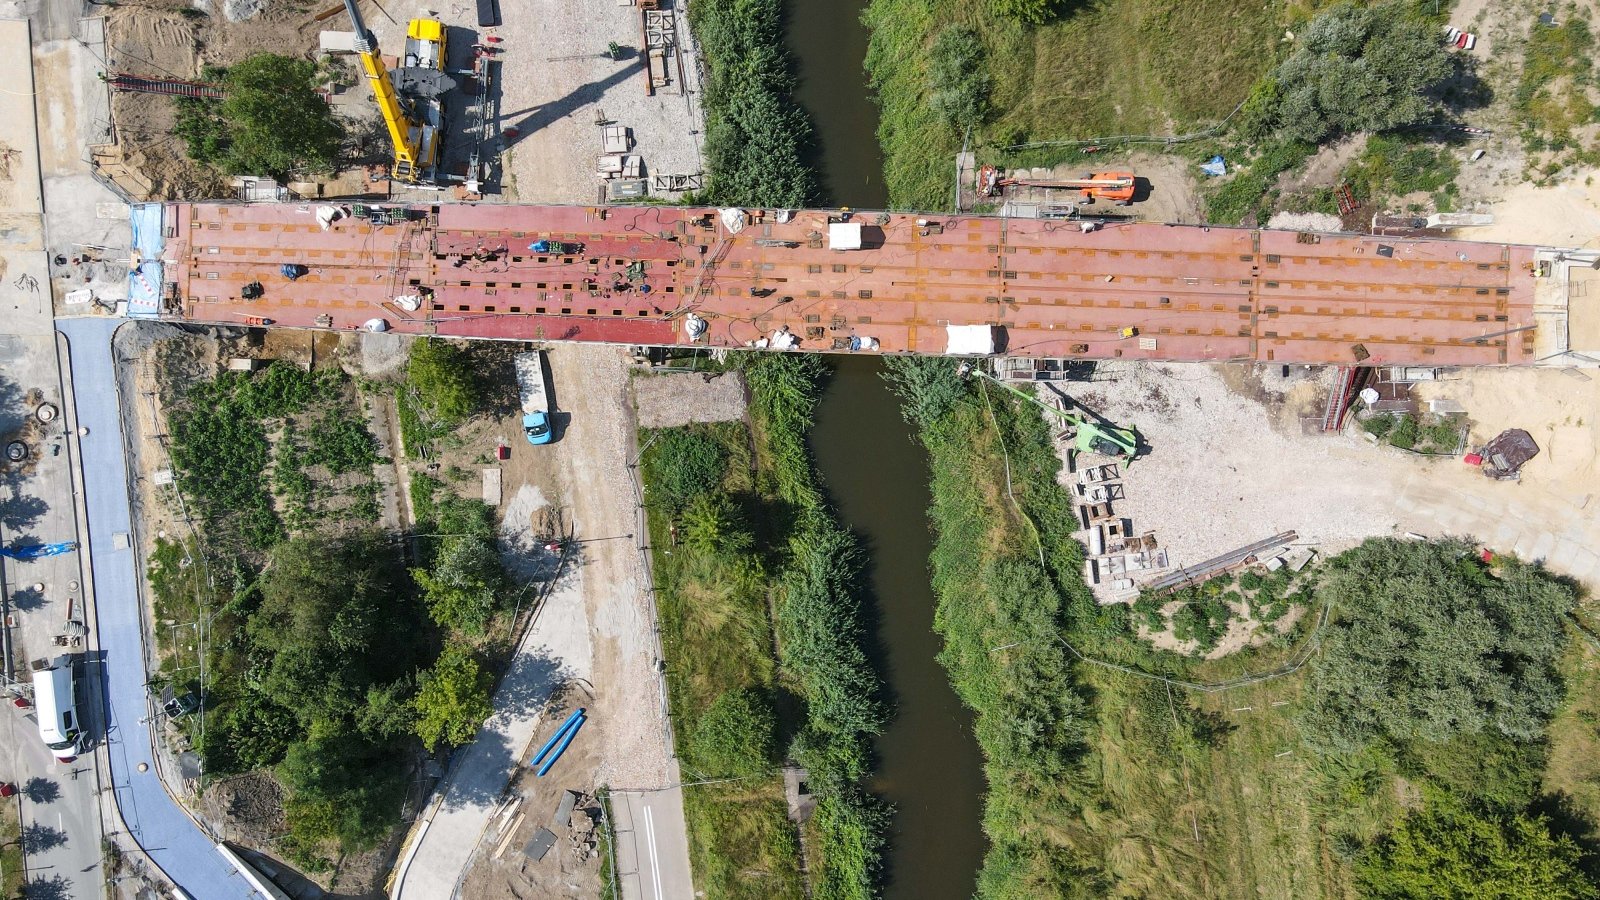 Widok z lotu ptaka na plac budowy mostów Berdychowskich.